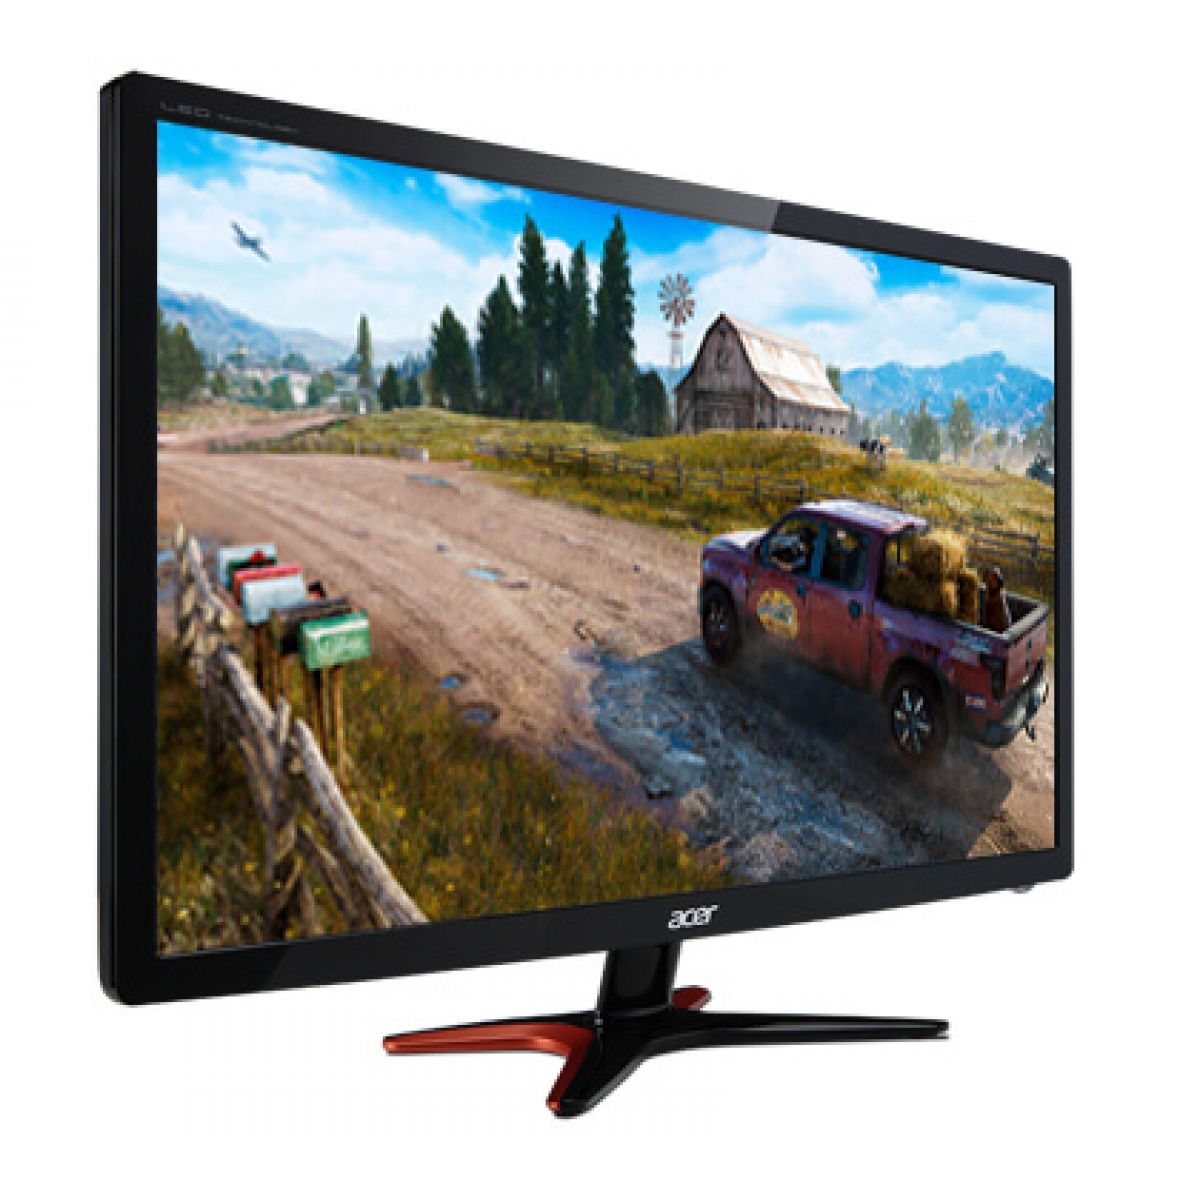 Monitor Gamer Acer 24 Pol, Full HD, 144Hz, 1ms, GN246HL